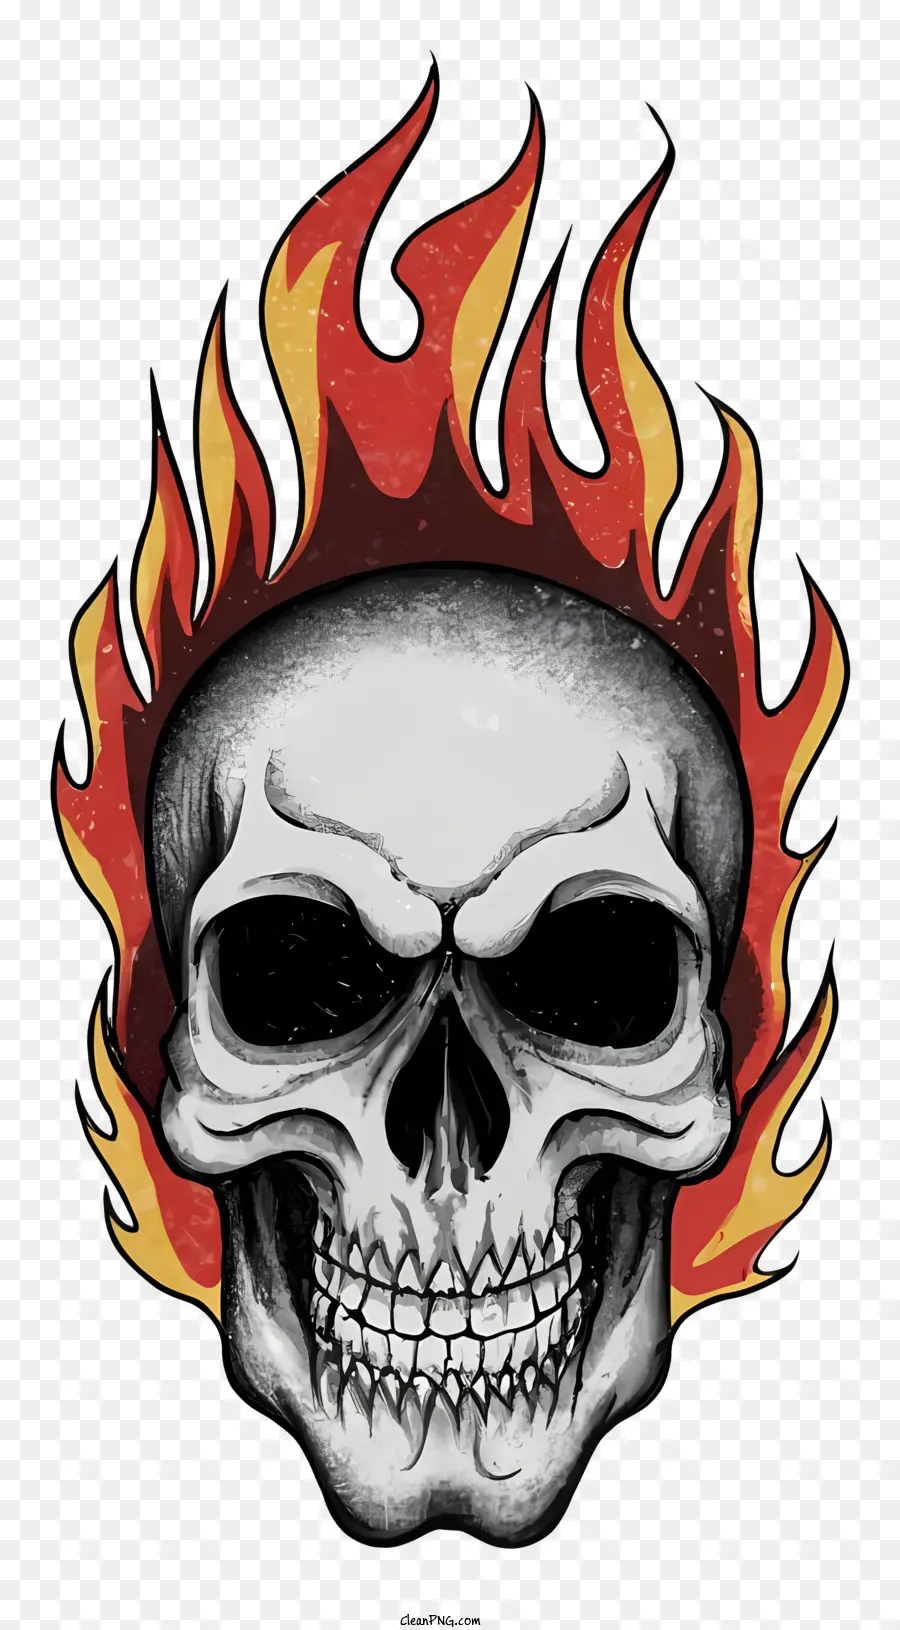 Halloween - Cranio fiammeggiante sullo sfondo nero con gli occhi luminosi